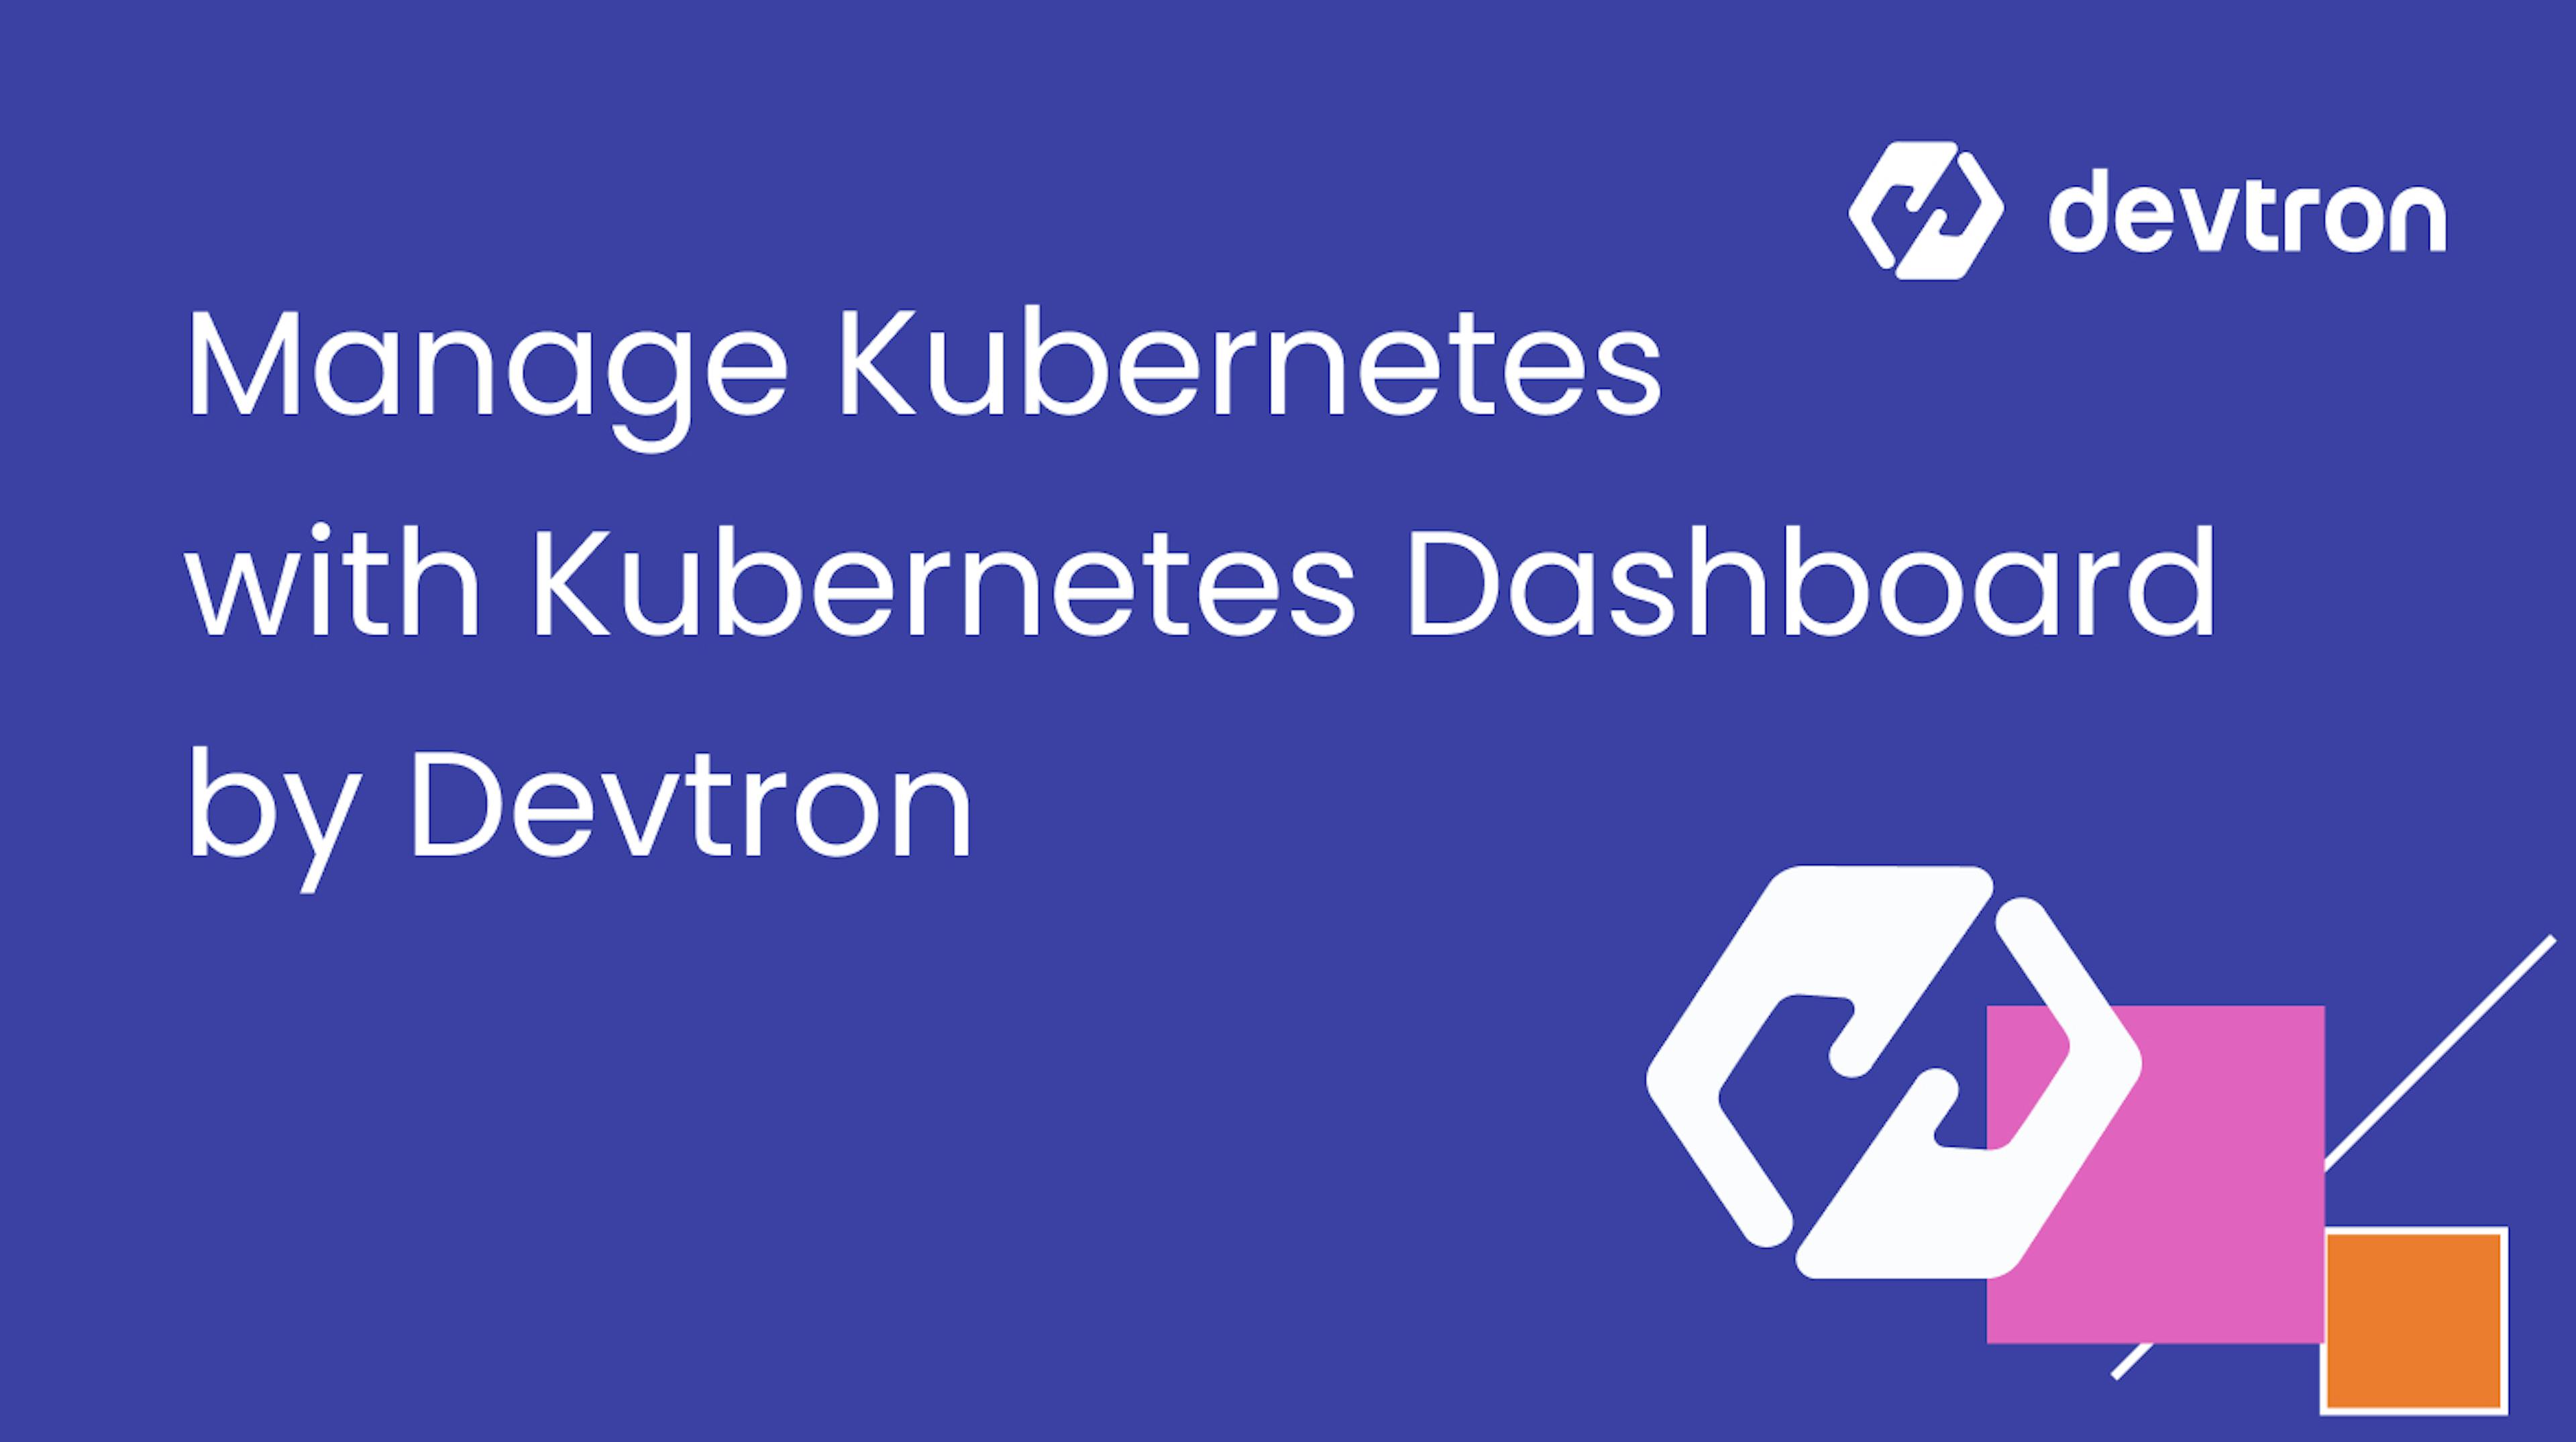 featured image - Kubernetes Dashboard by Devtron ile Kubernetes'i Profesyonel Gibi Yönetme